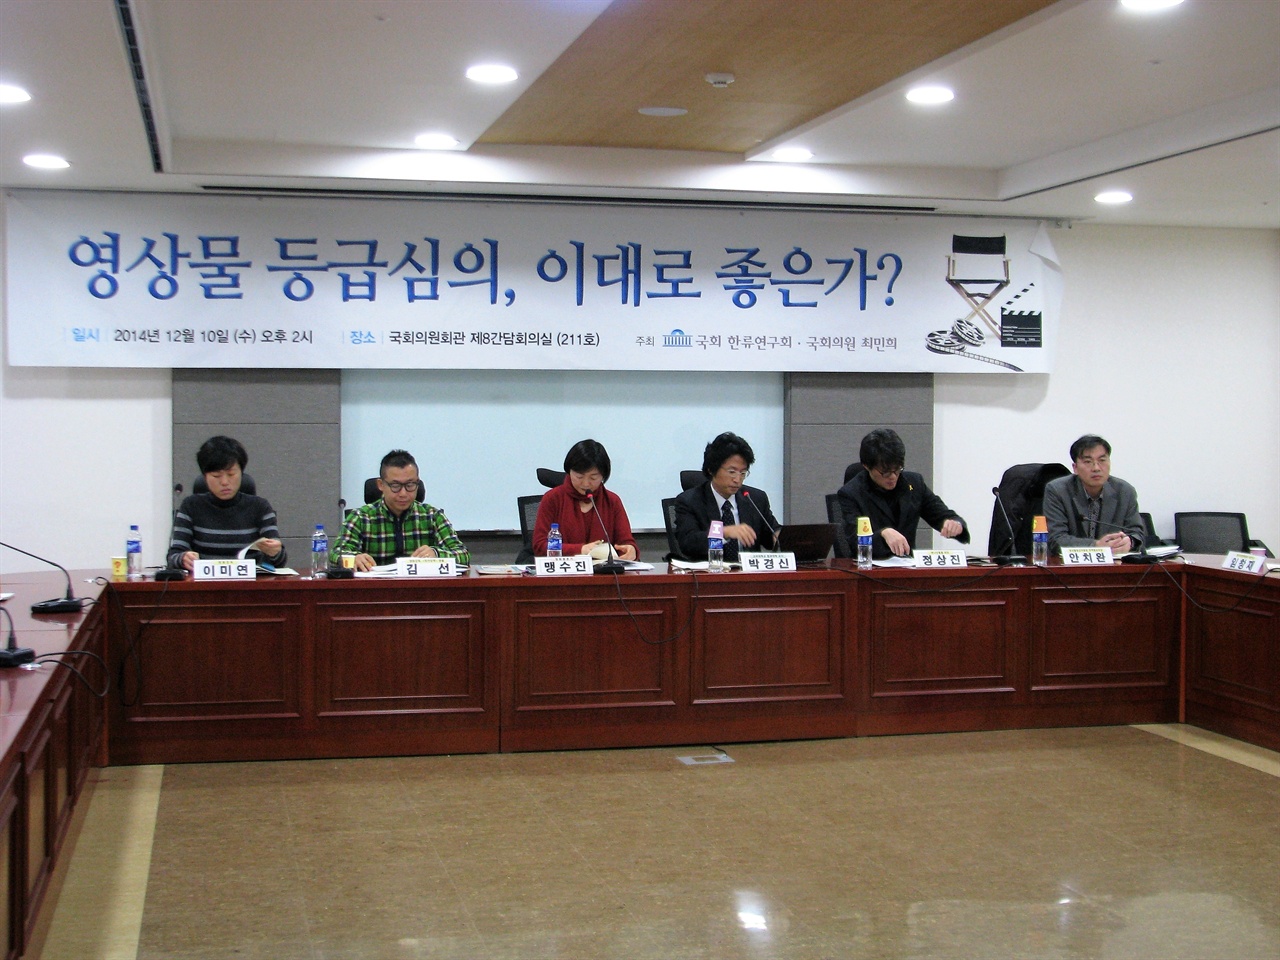  지난 2014년 국회에서 열린 영등위 관련 토론회에 참석해 영화계 입장을 이야기했던 이미연 감독(왼쪽)